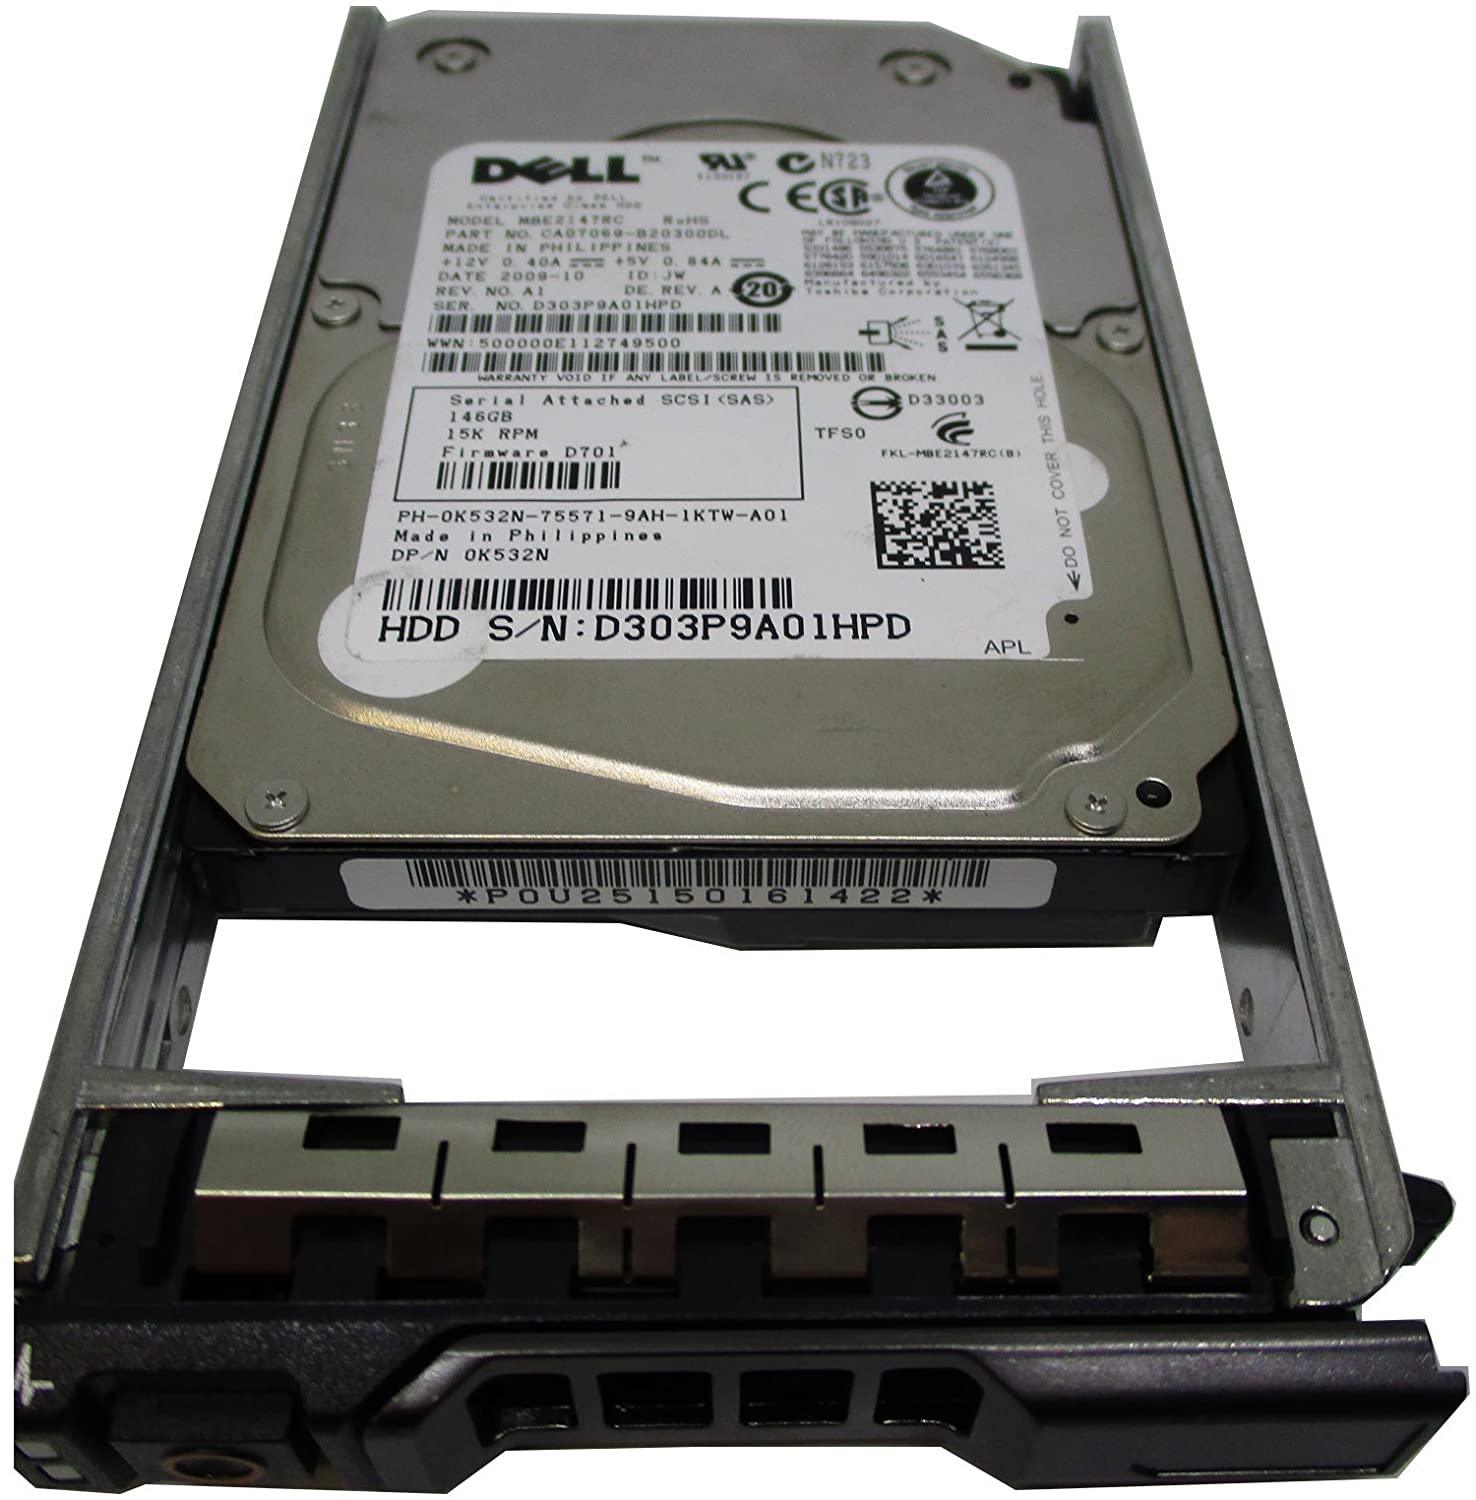 K532N Dell 146GB 15K 6Gb/s 2.5" SAS Hard Drive MBE2147RC